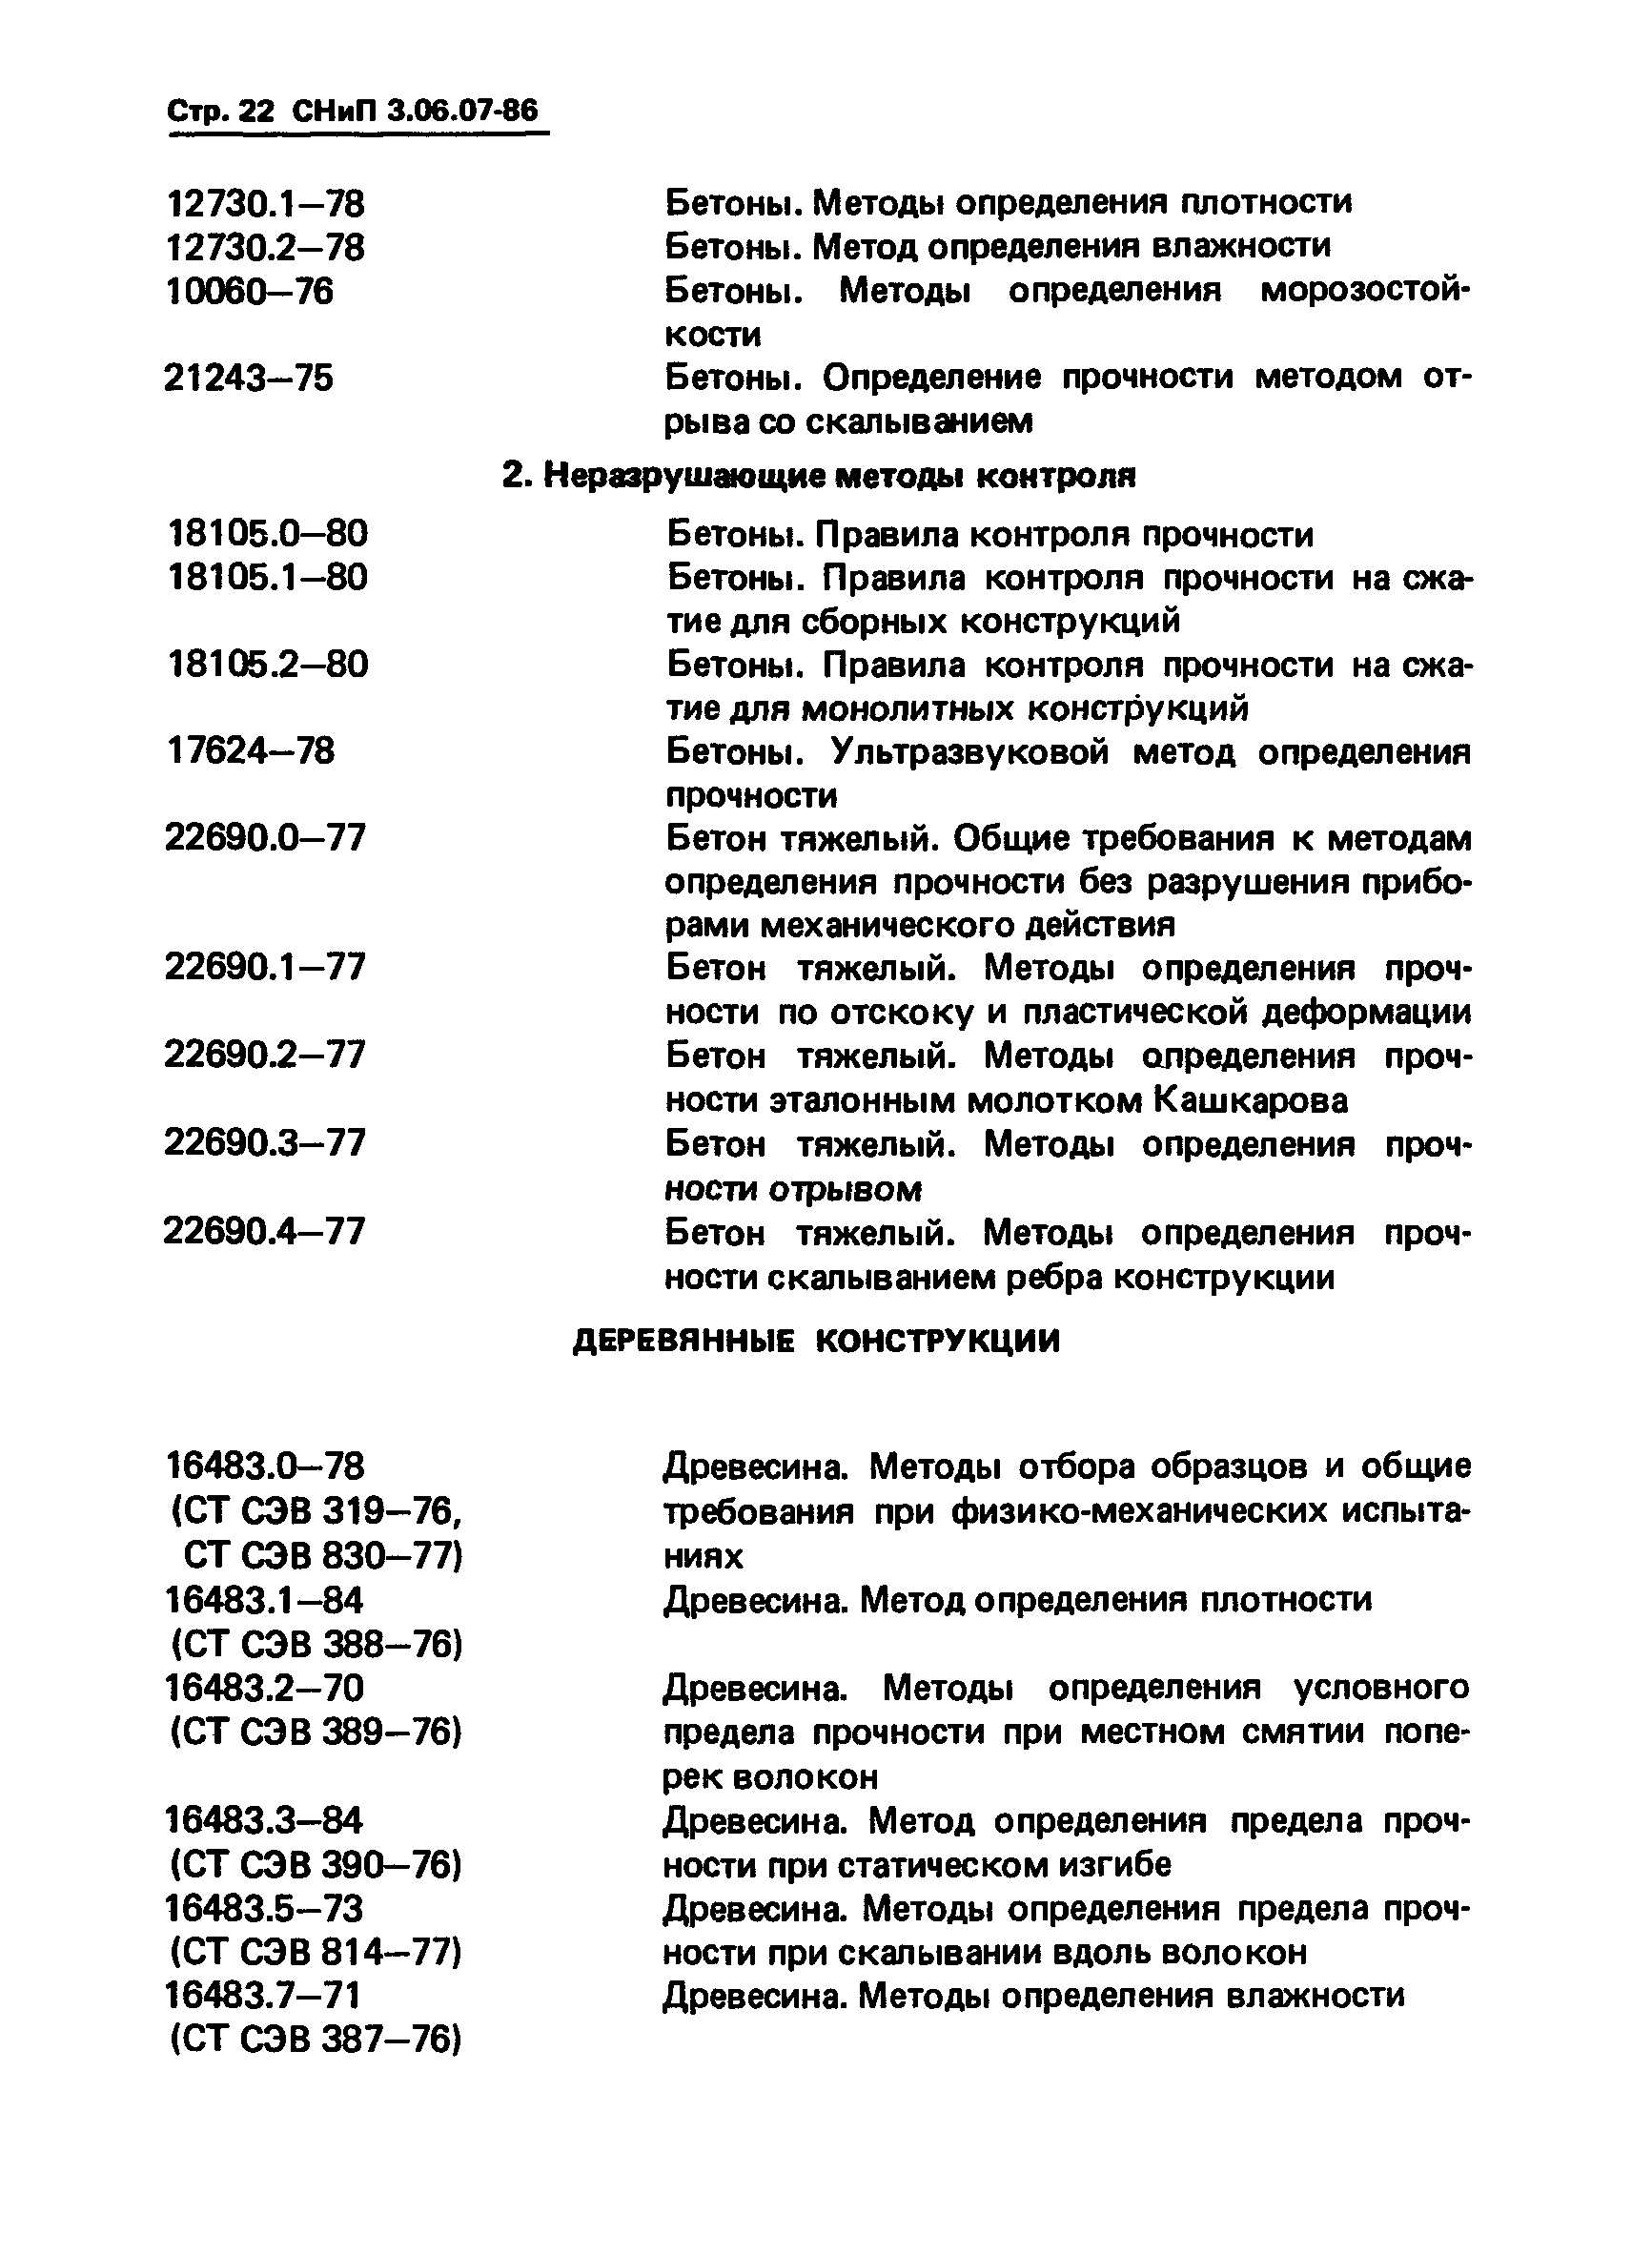 СНиП 3.06.07-86